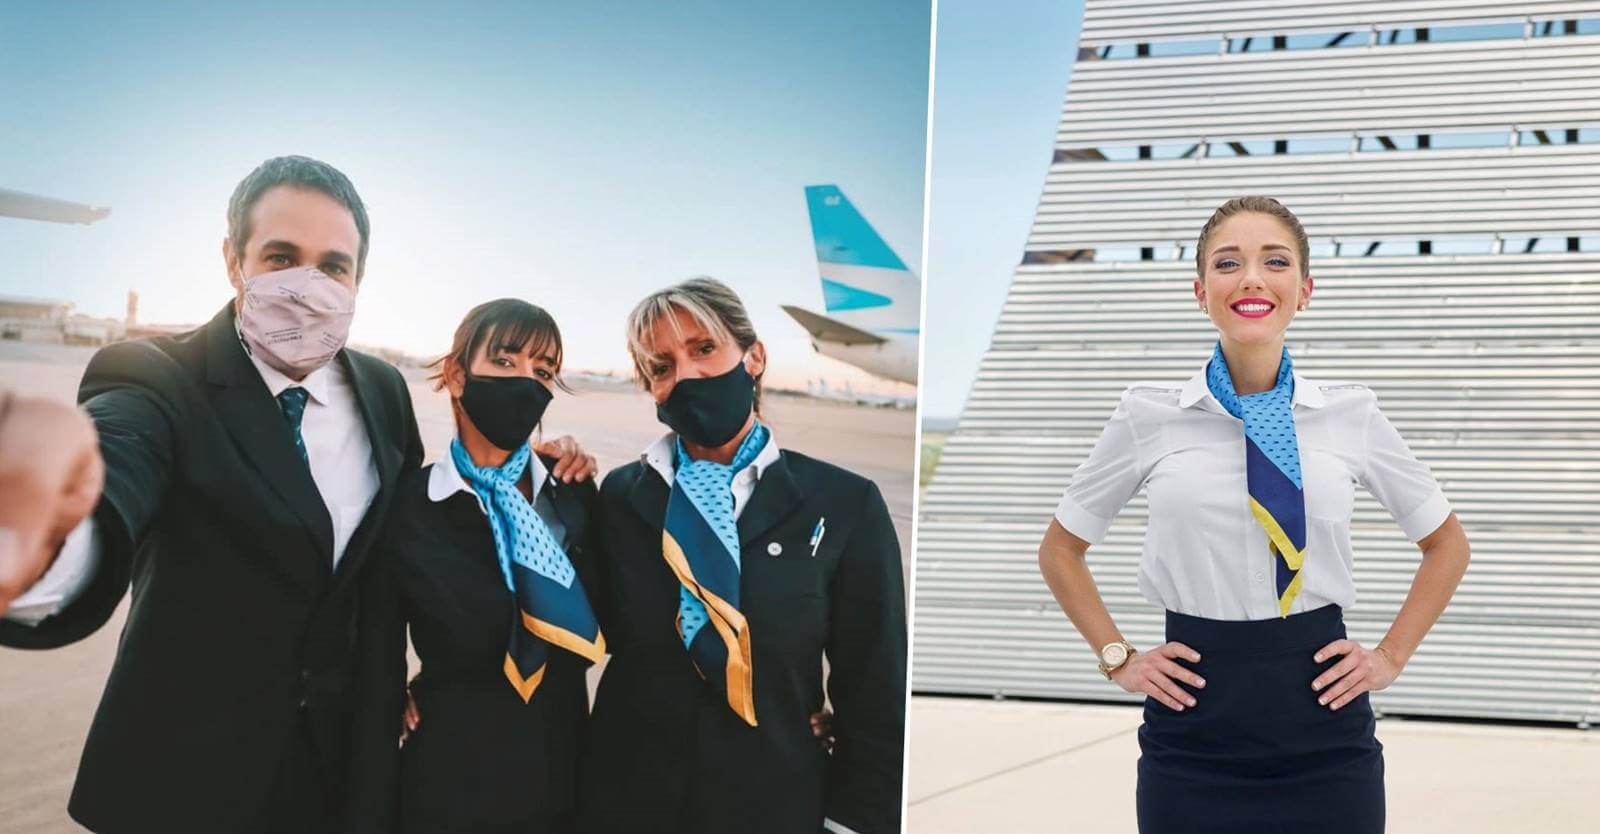 Aerolineas Argentinas cabin crew careers